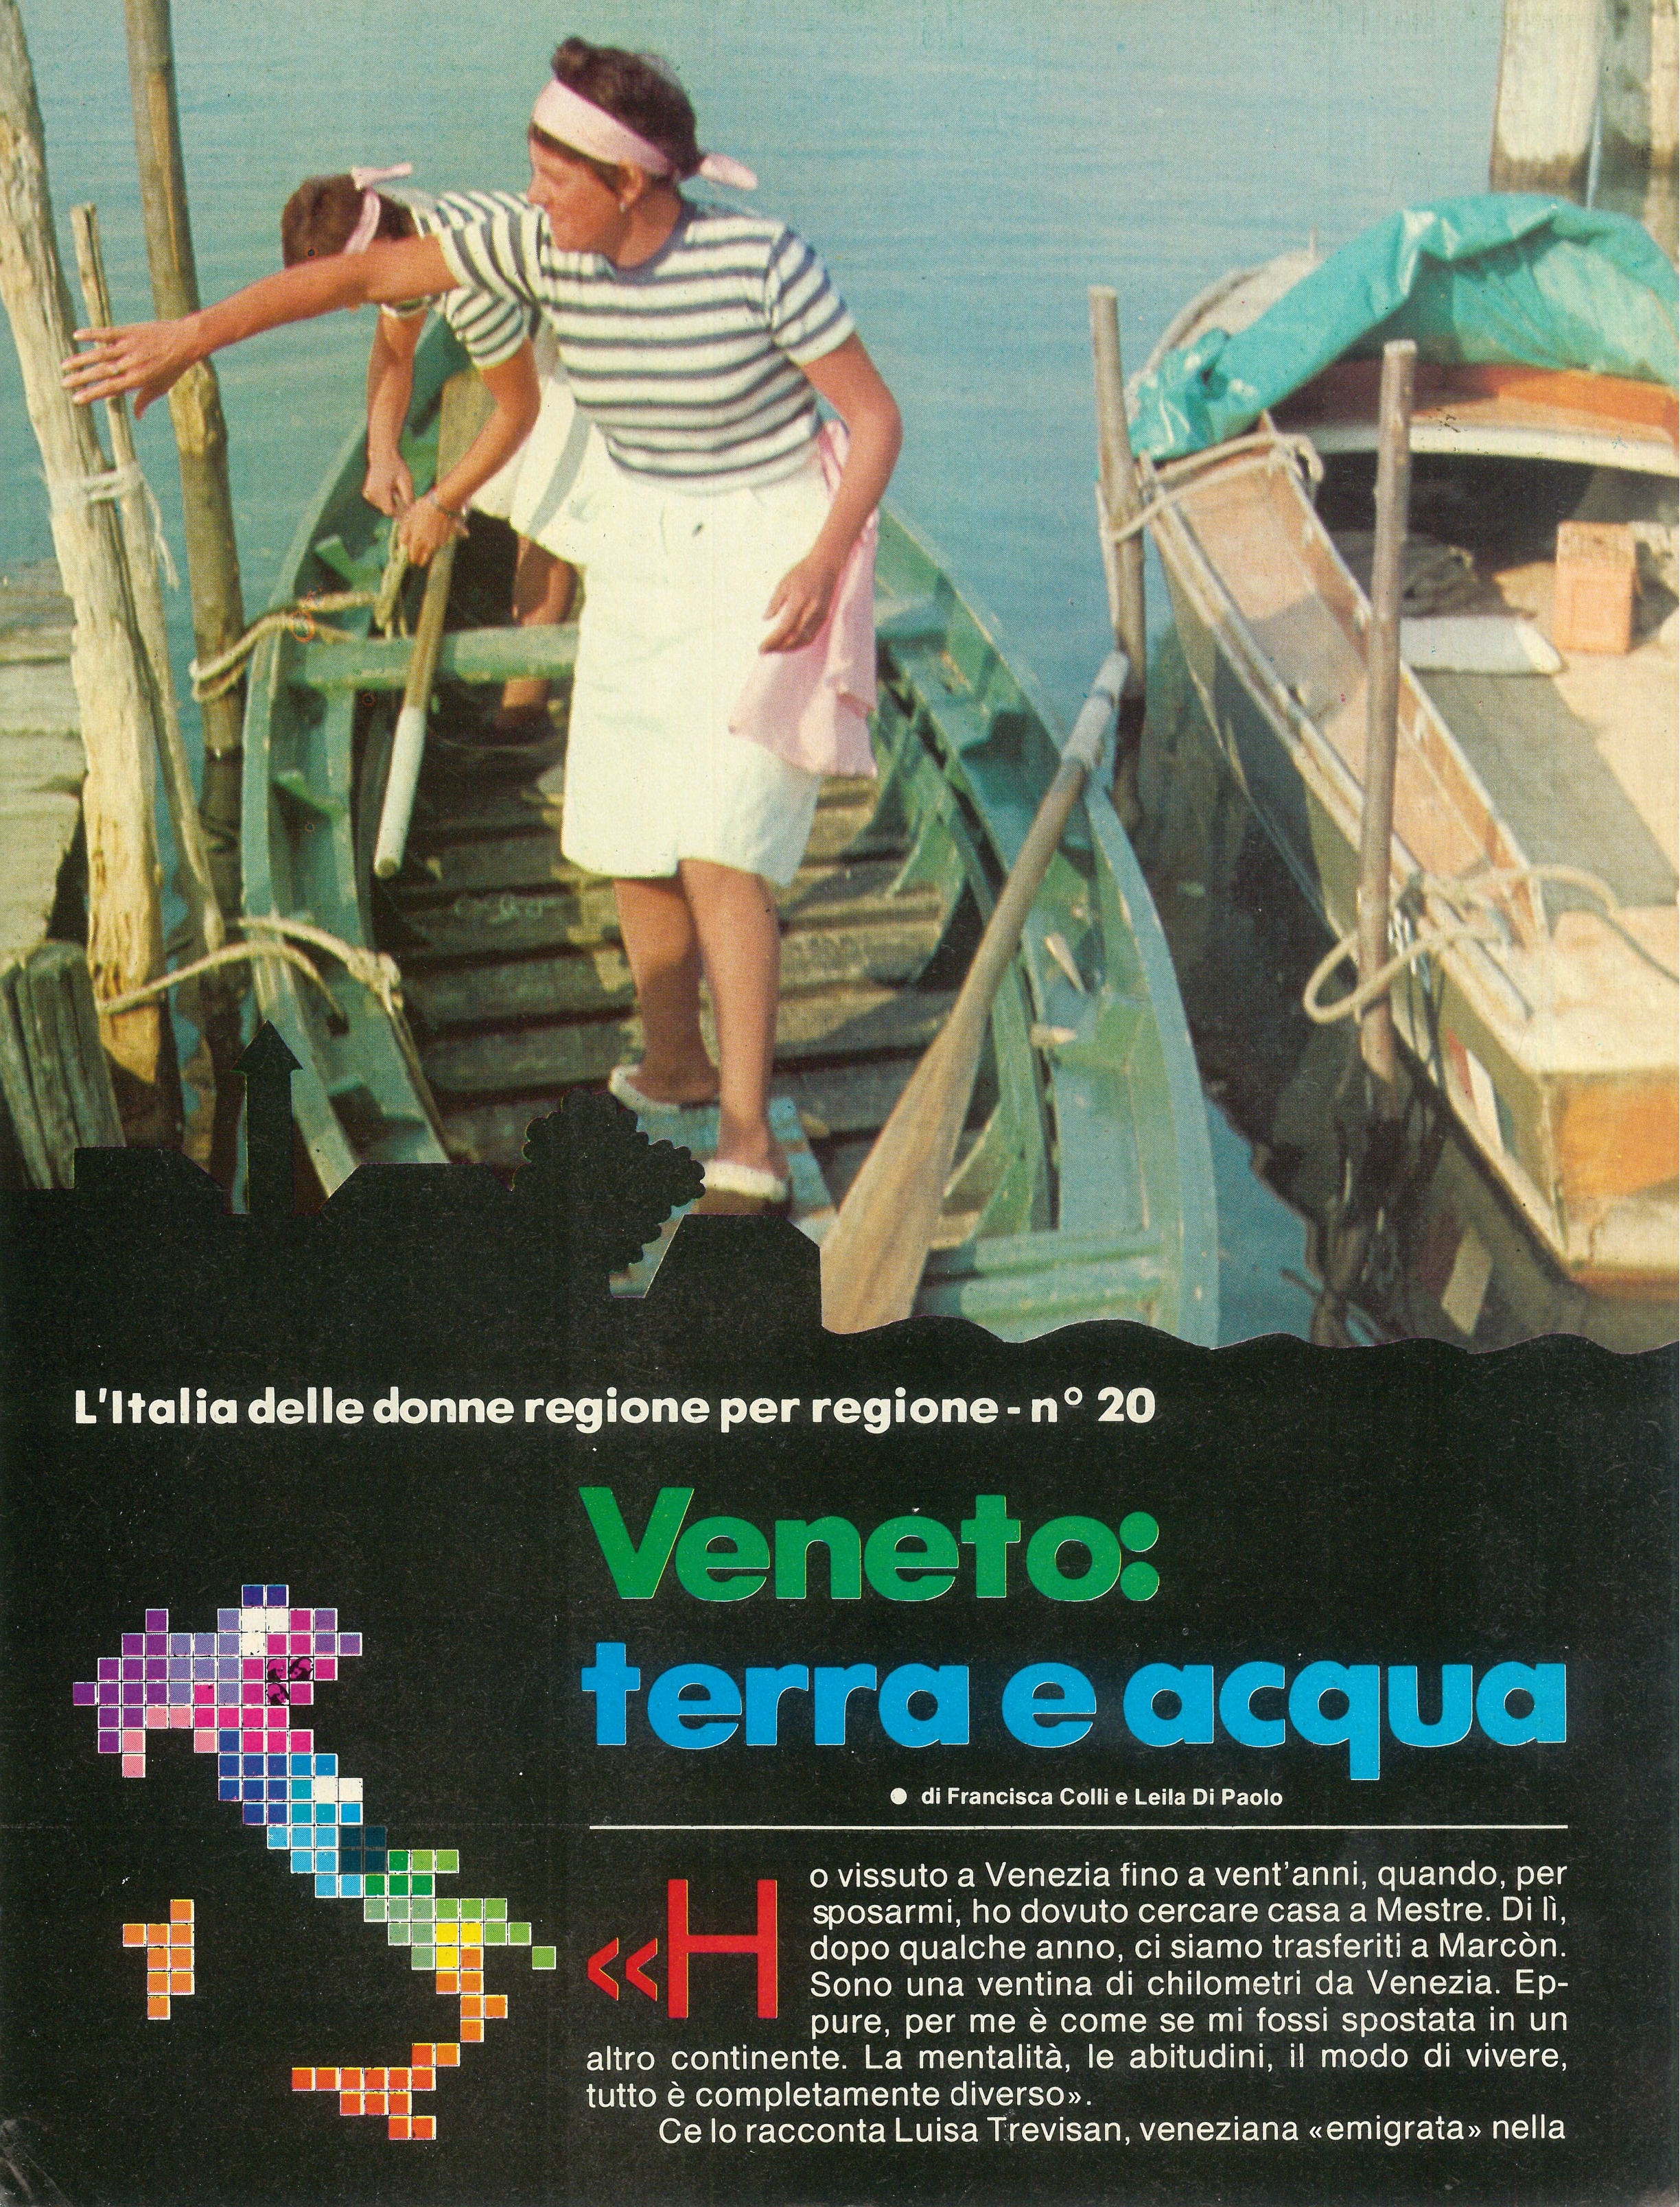 Foto: Veneto: terra e acqua